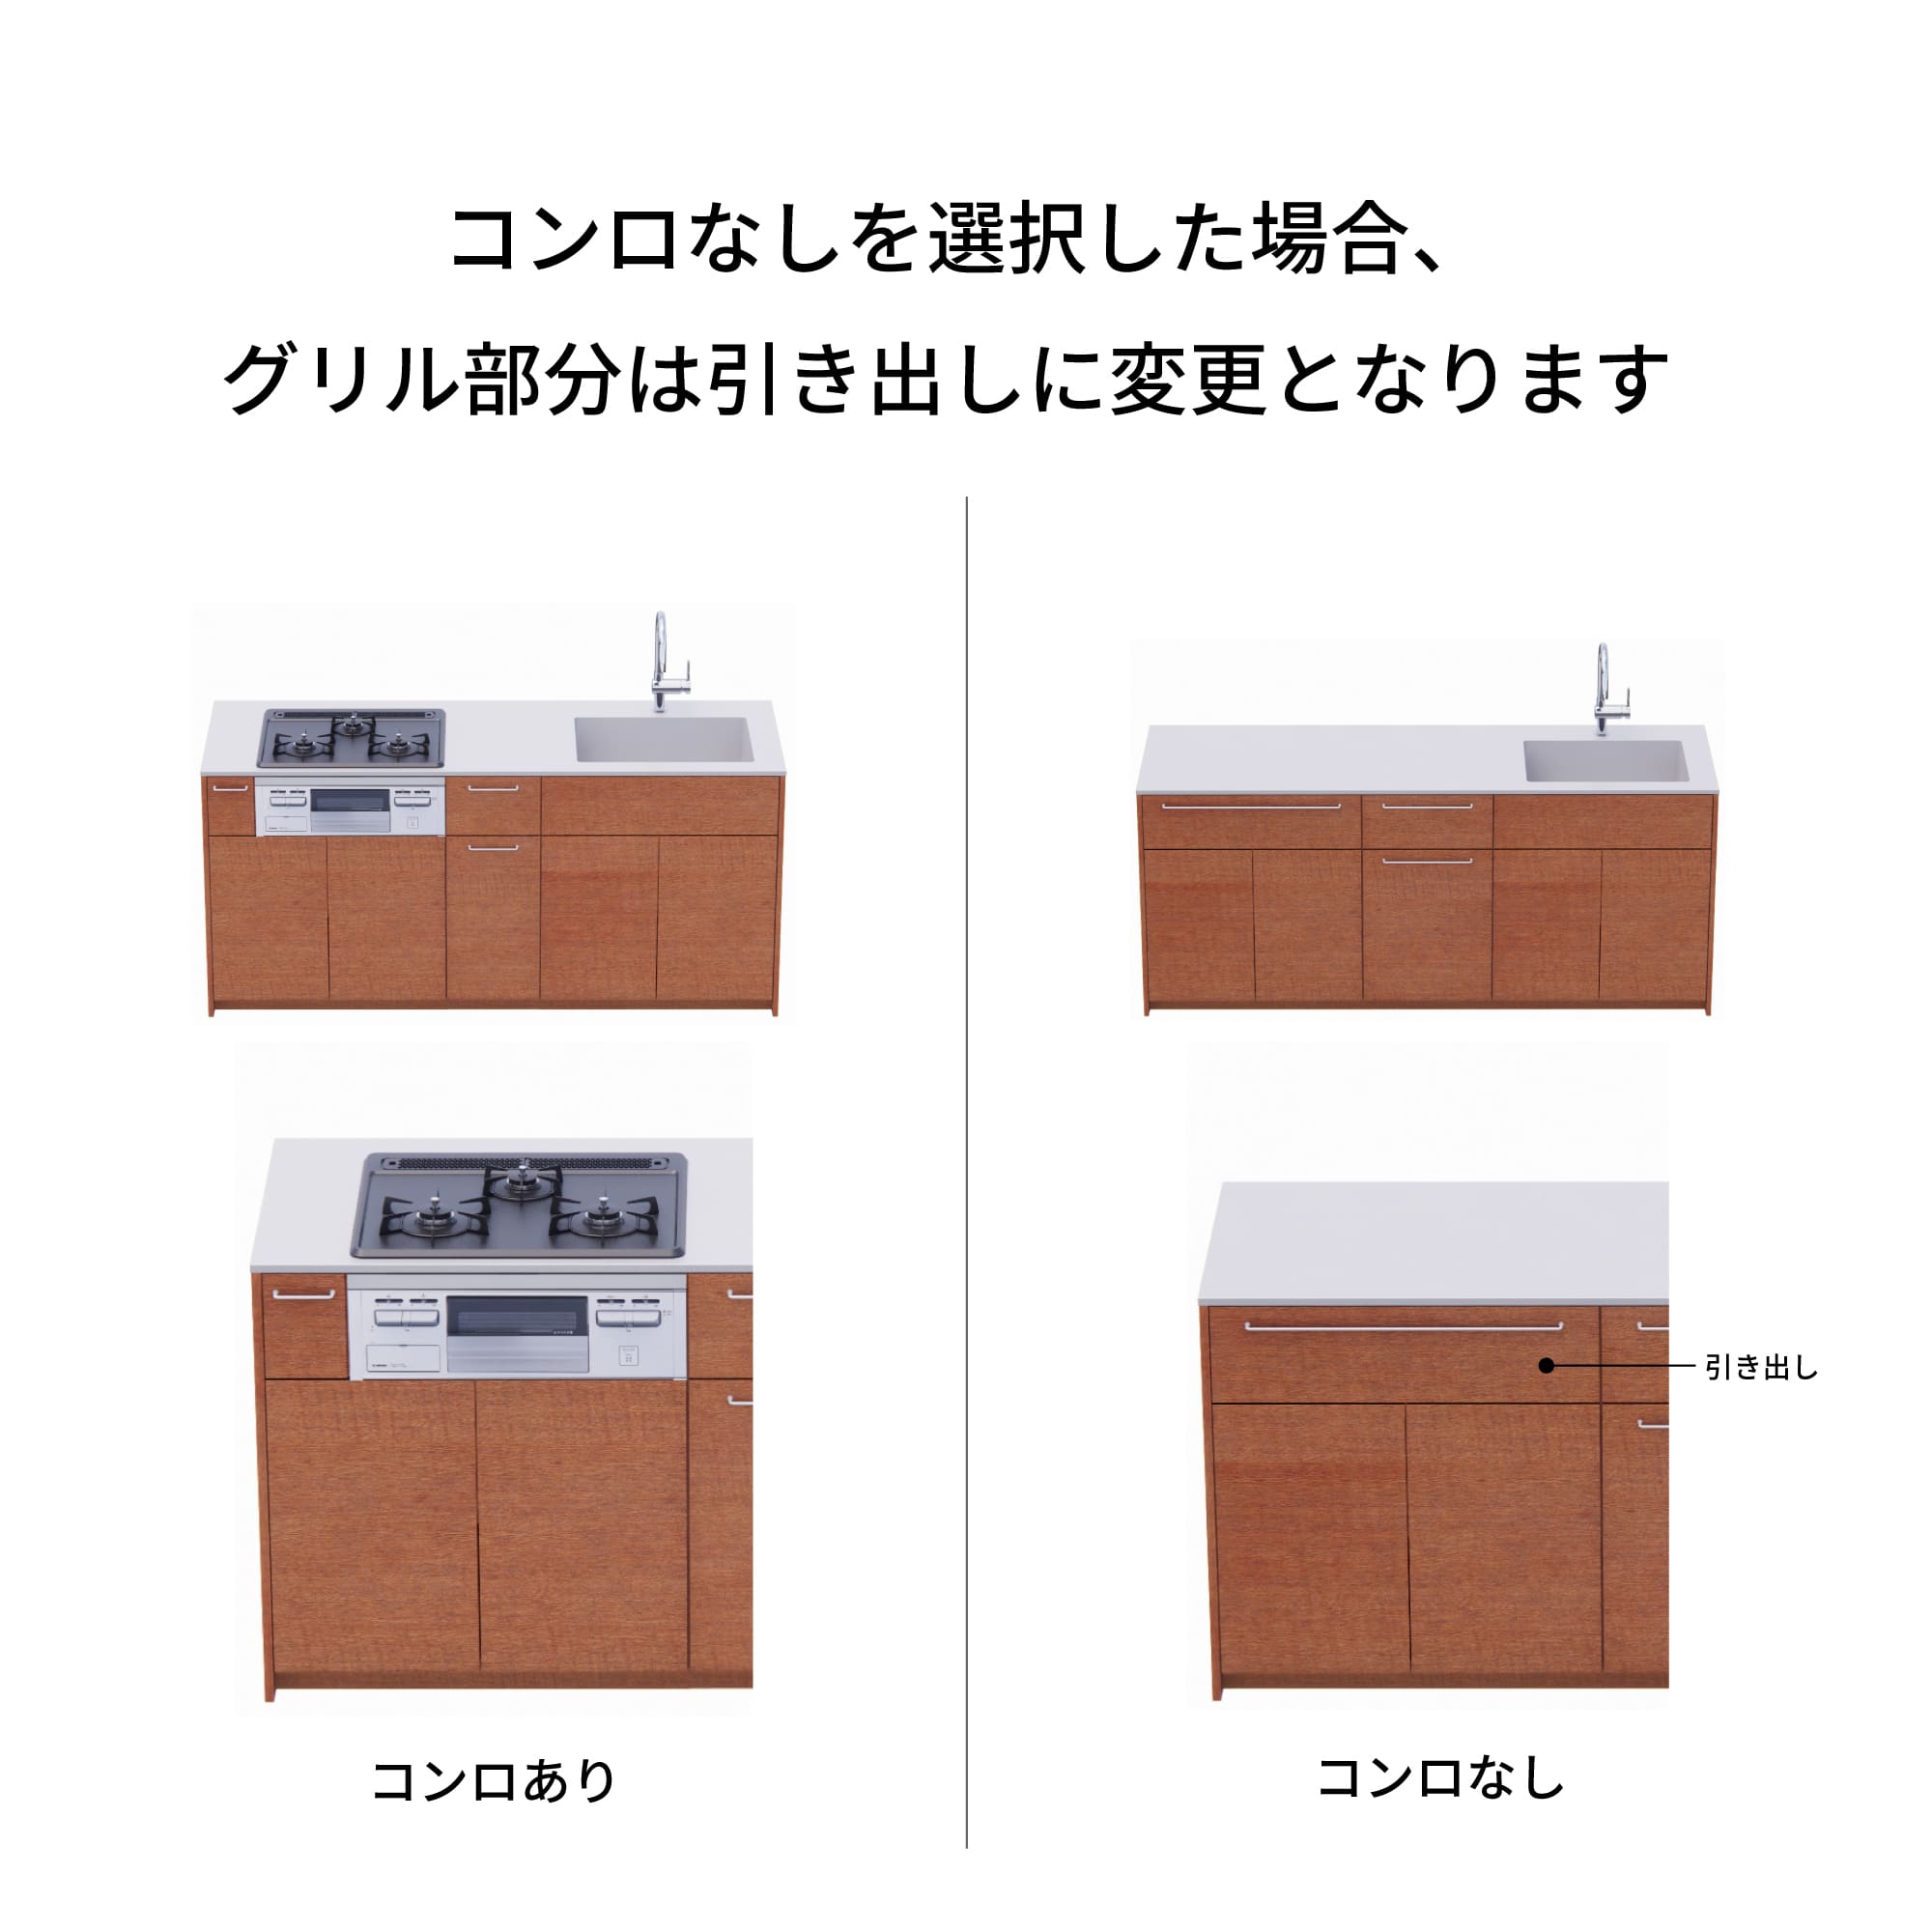 木製システムキッチン 壁付け型 W1840・コンロなし / オーブンなし / 食洗機なし KB-KC022-12-G183 コンロ無しの場合、通常魚焼きグリルがある部分は引き出しになっています